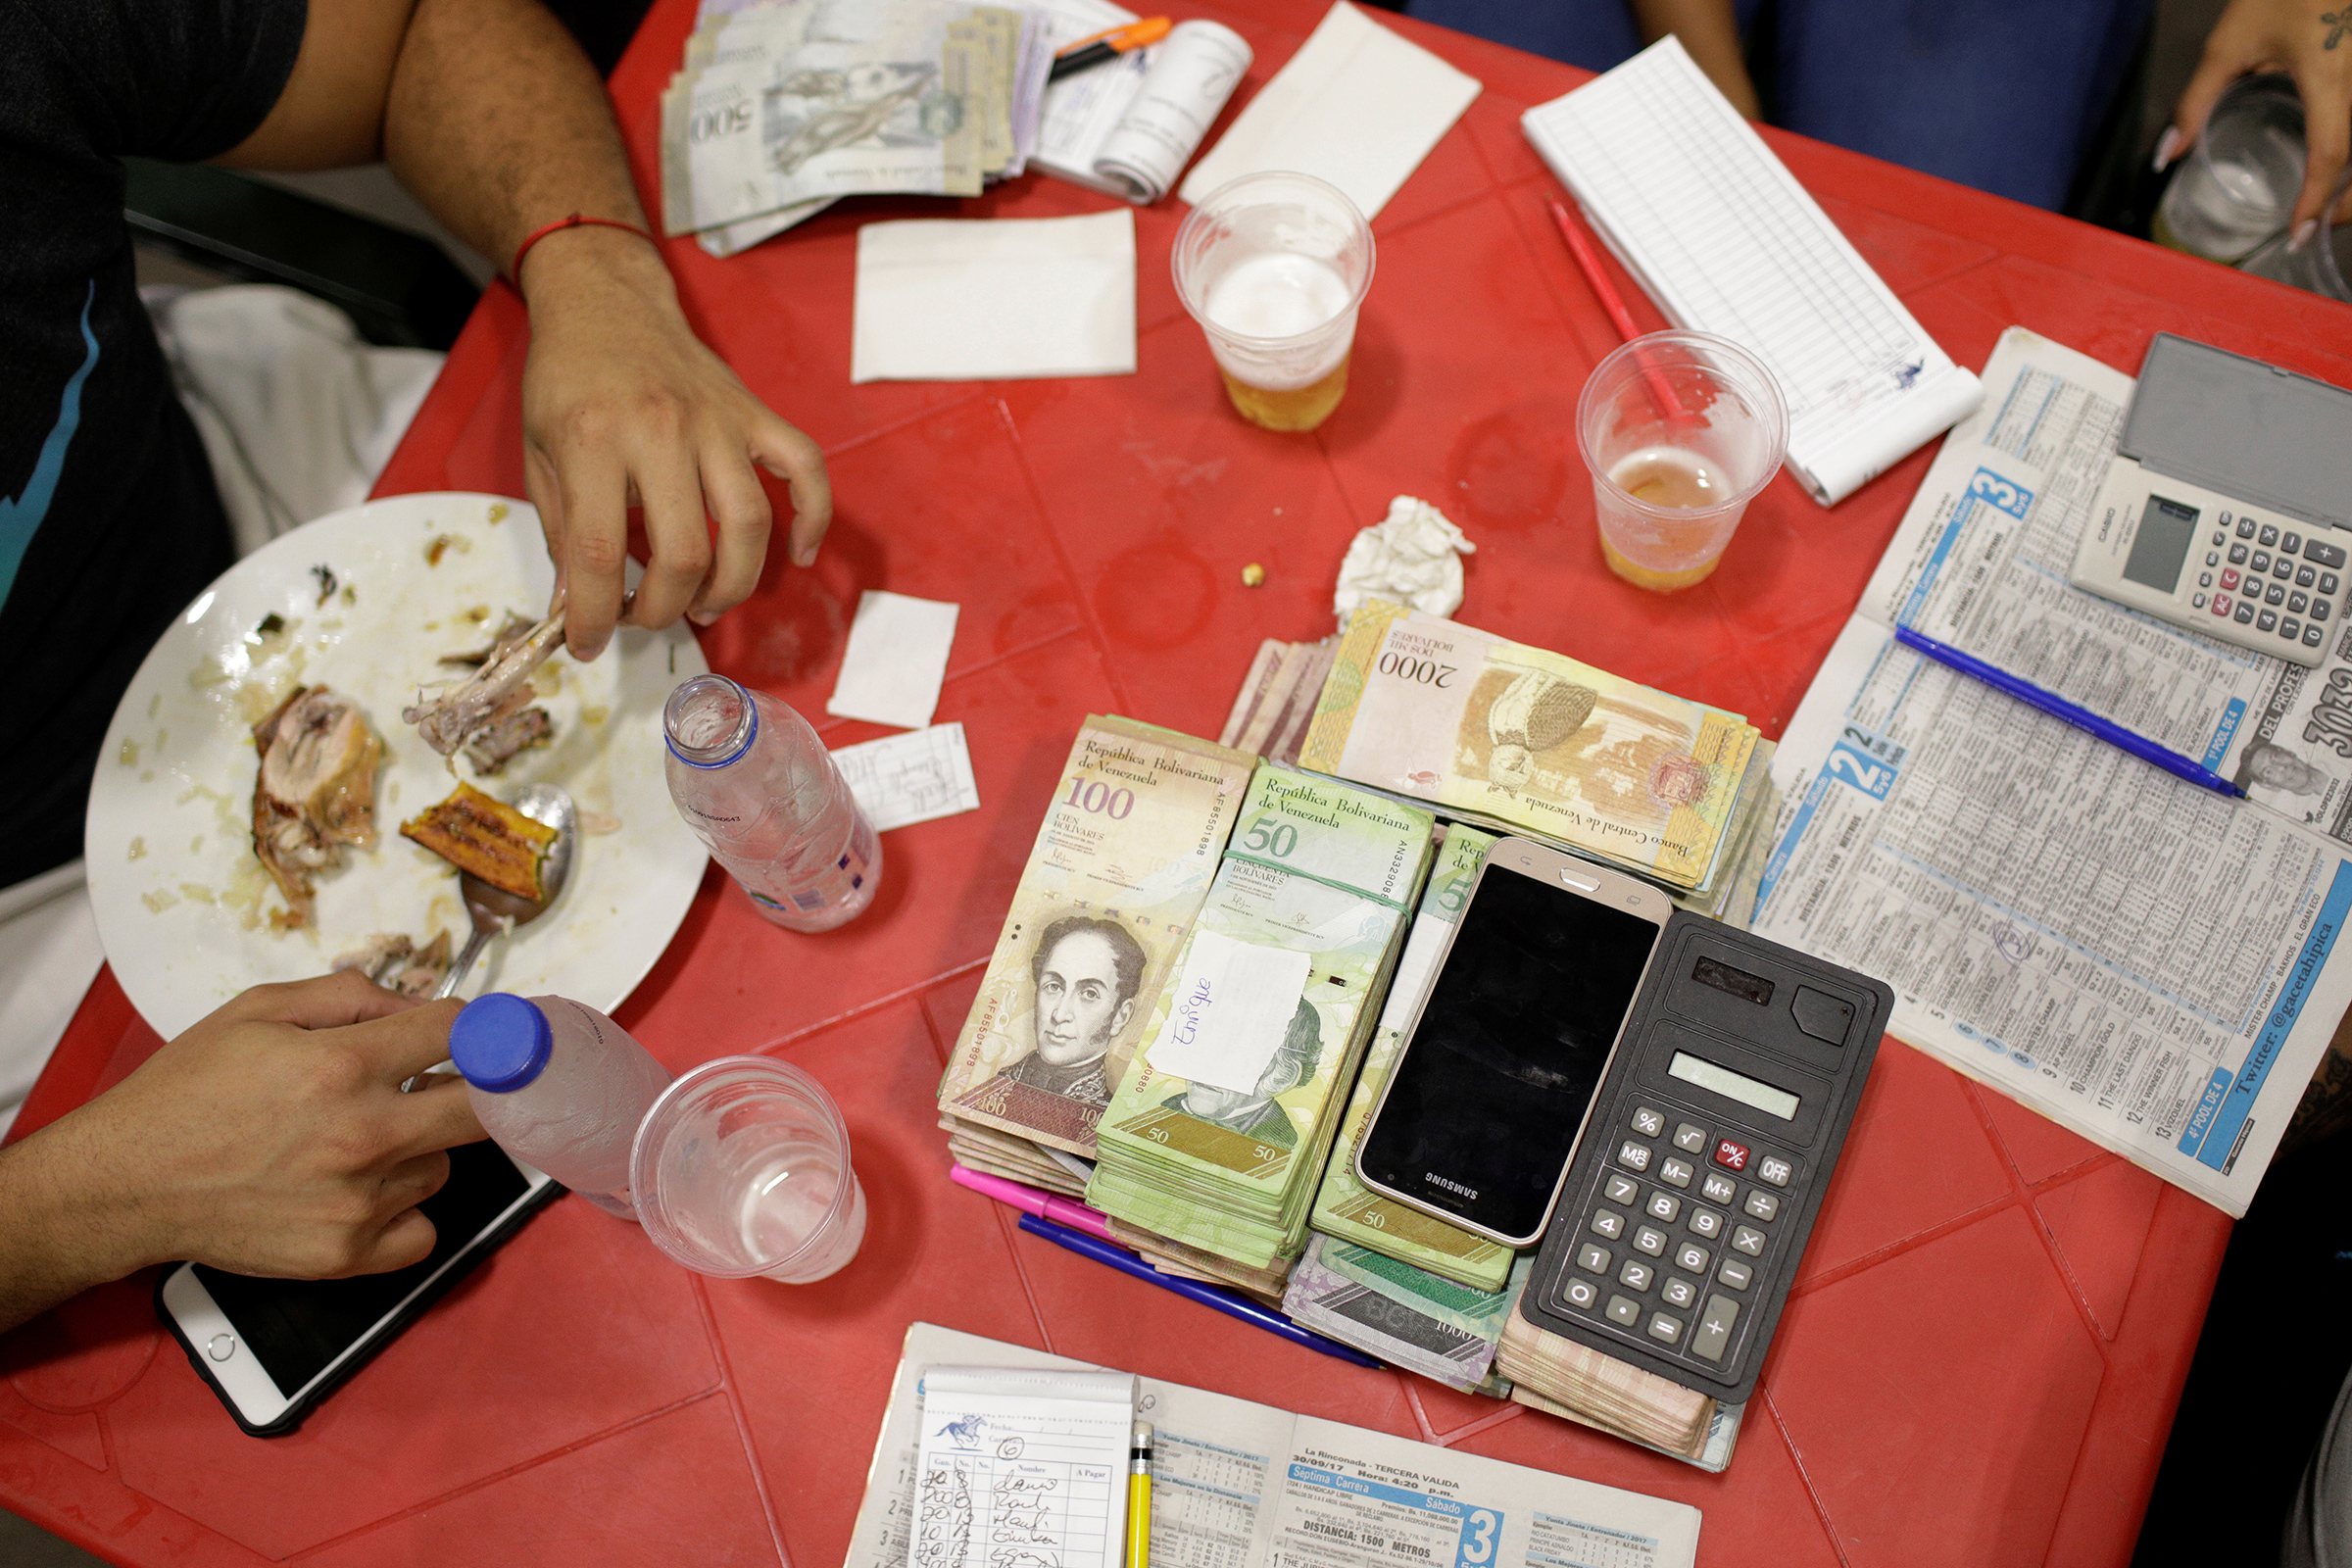 В Венесуэле все меньше наличных денег. Власти не успевают печатать достаточное количество наличных из-за стремительной инфляции. Многие бары, магазины, киоски переходят на электронные транзакции.